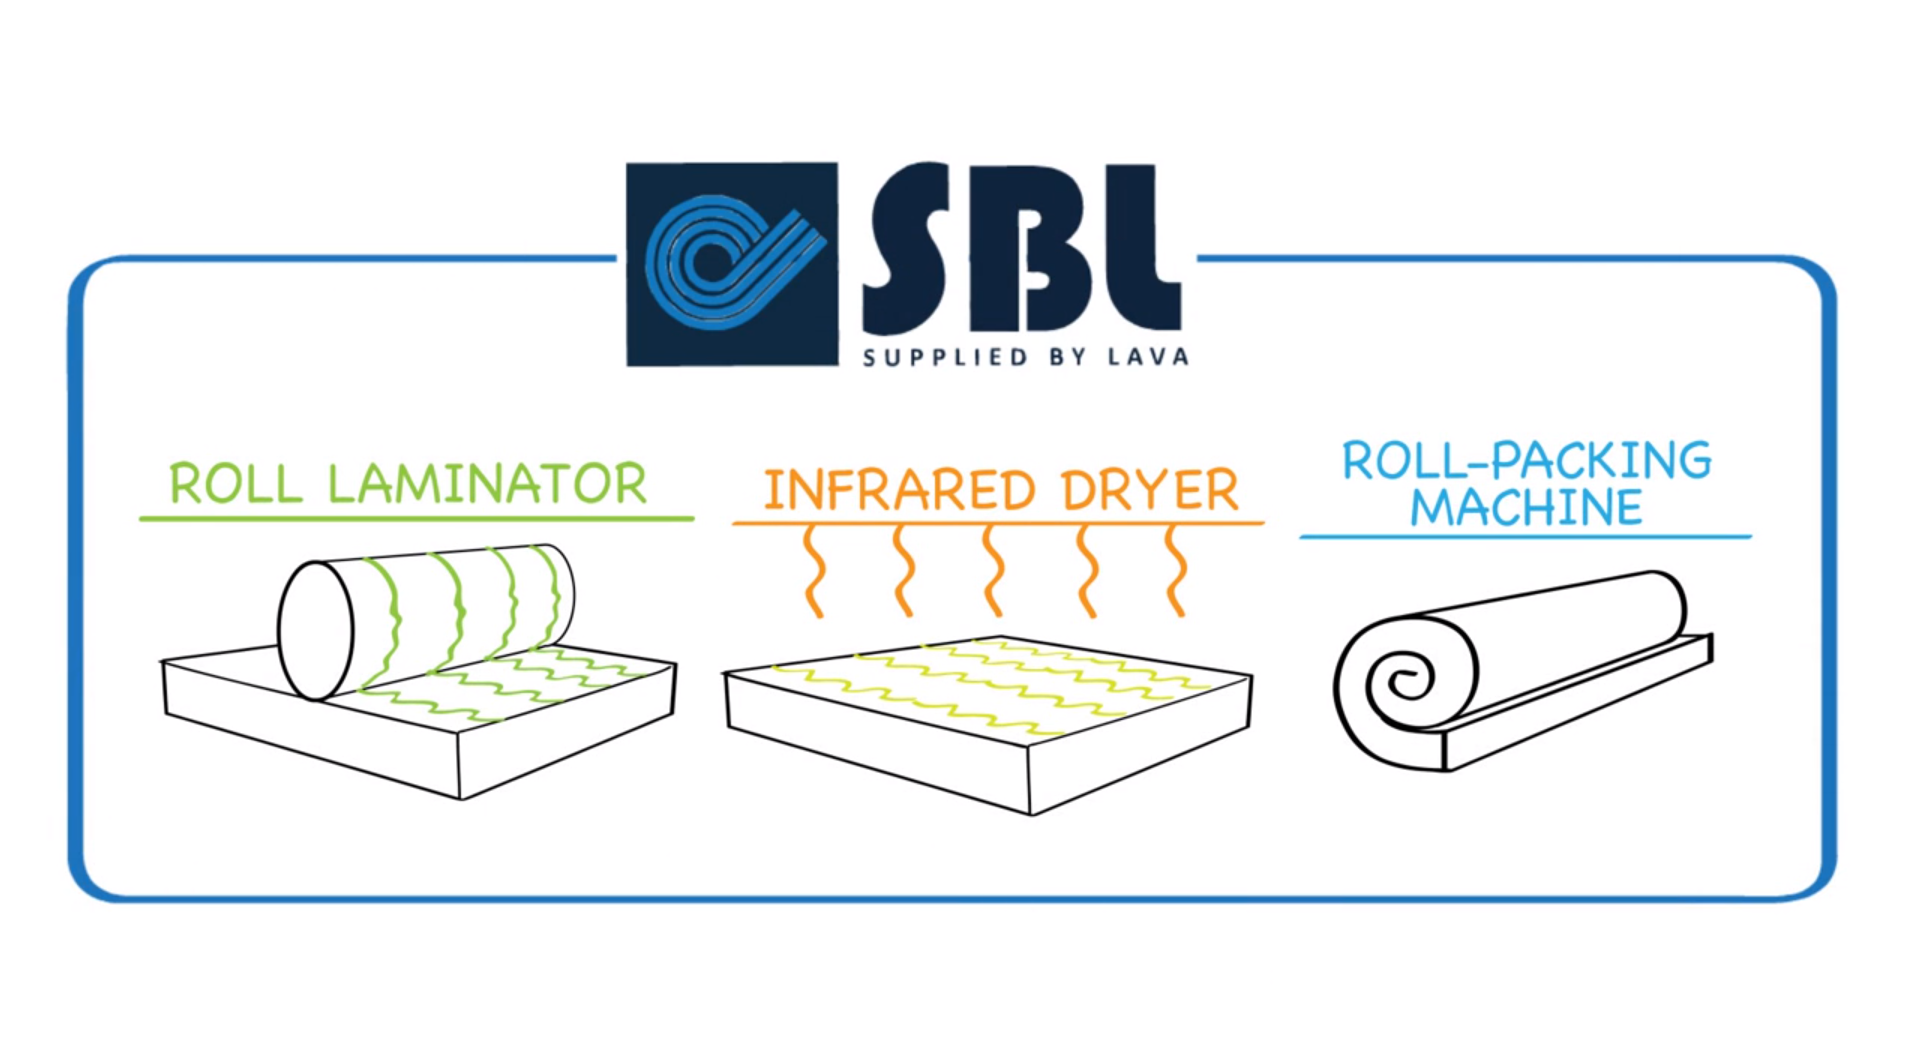 Verschillende geautomatiseerde handelingen van SBL zoals een roll laminator, een infrared dryer en een roll-packing machine